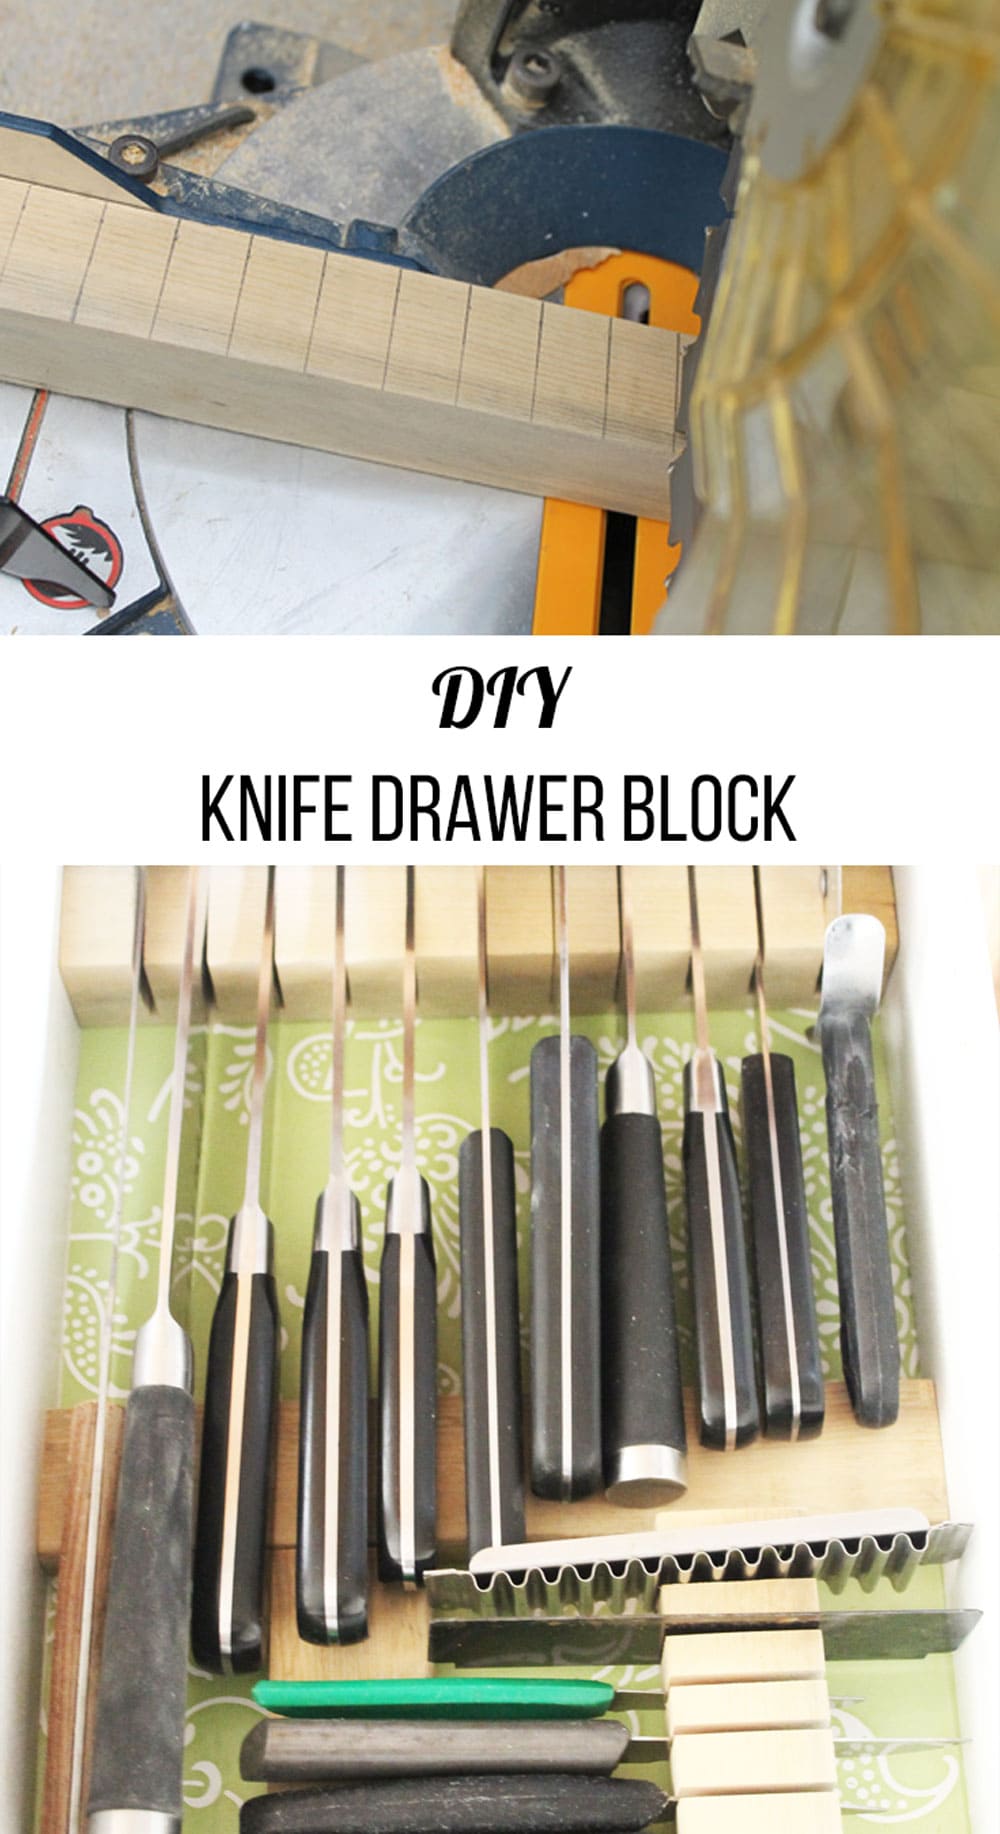 knife drawer block diy